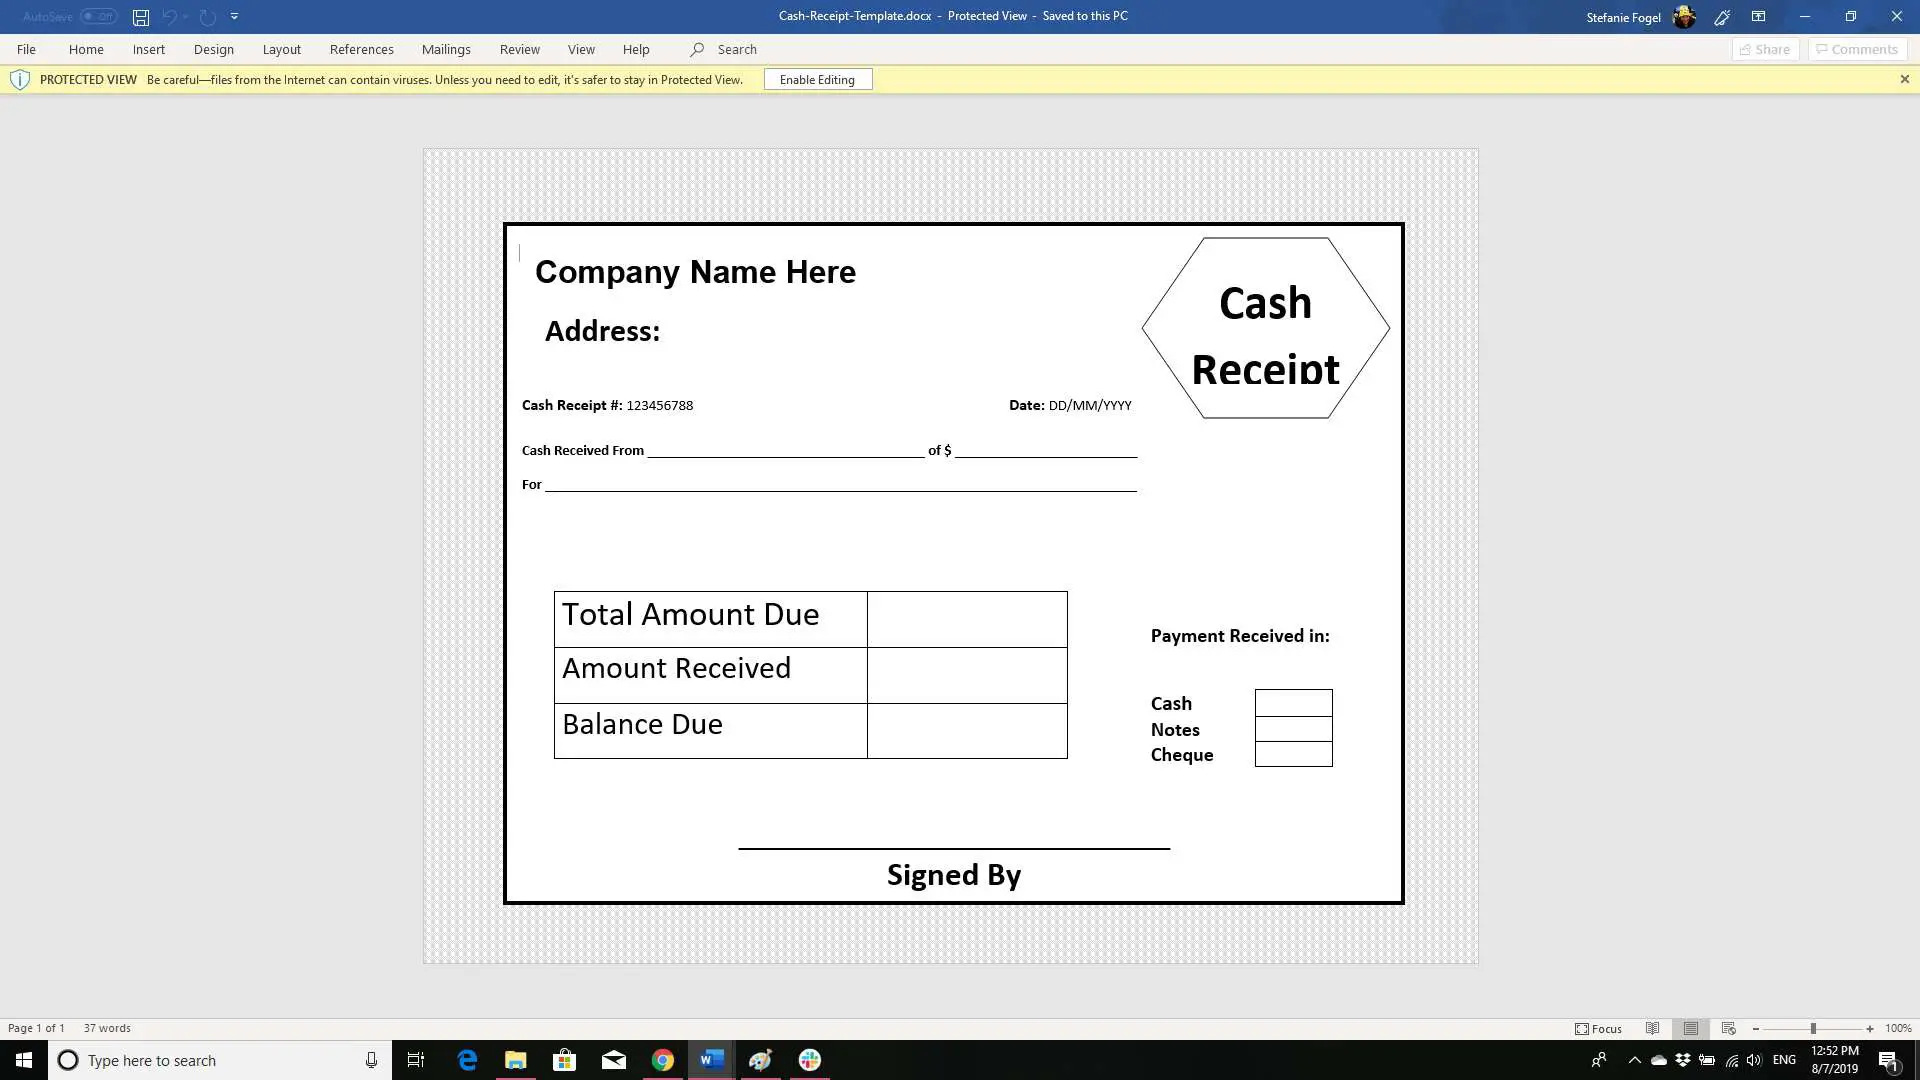 Captura de tela do modelo de recibo de retirada de dinheiro no Word